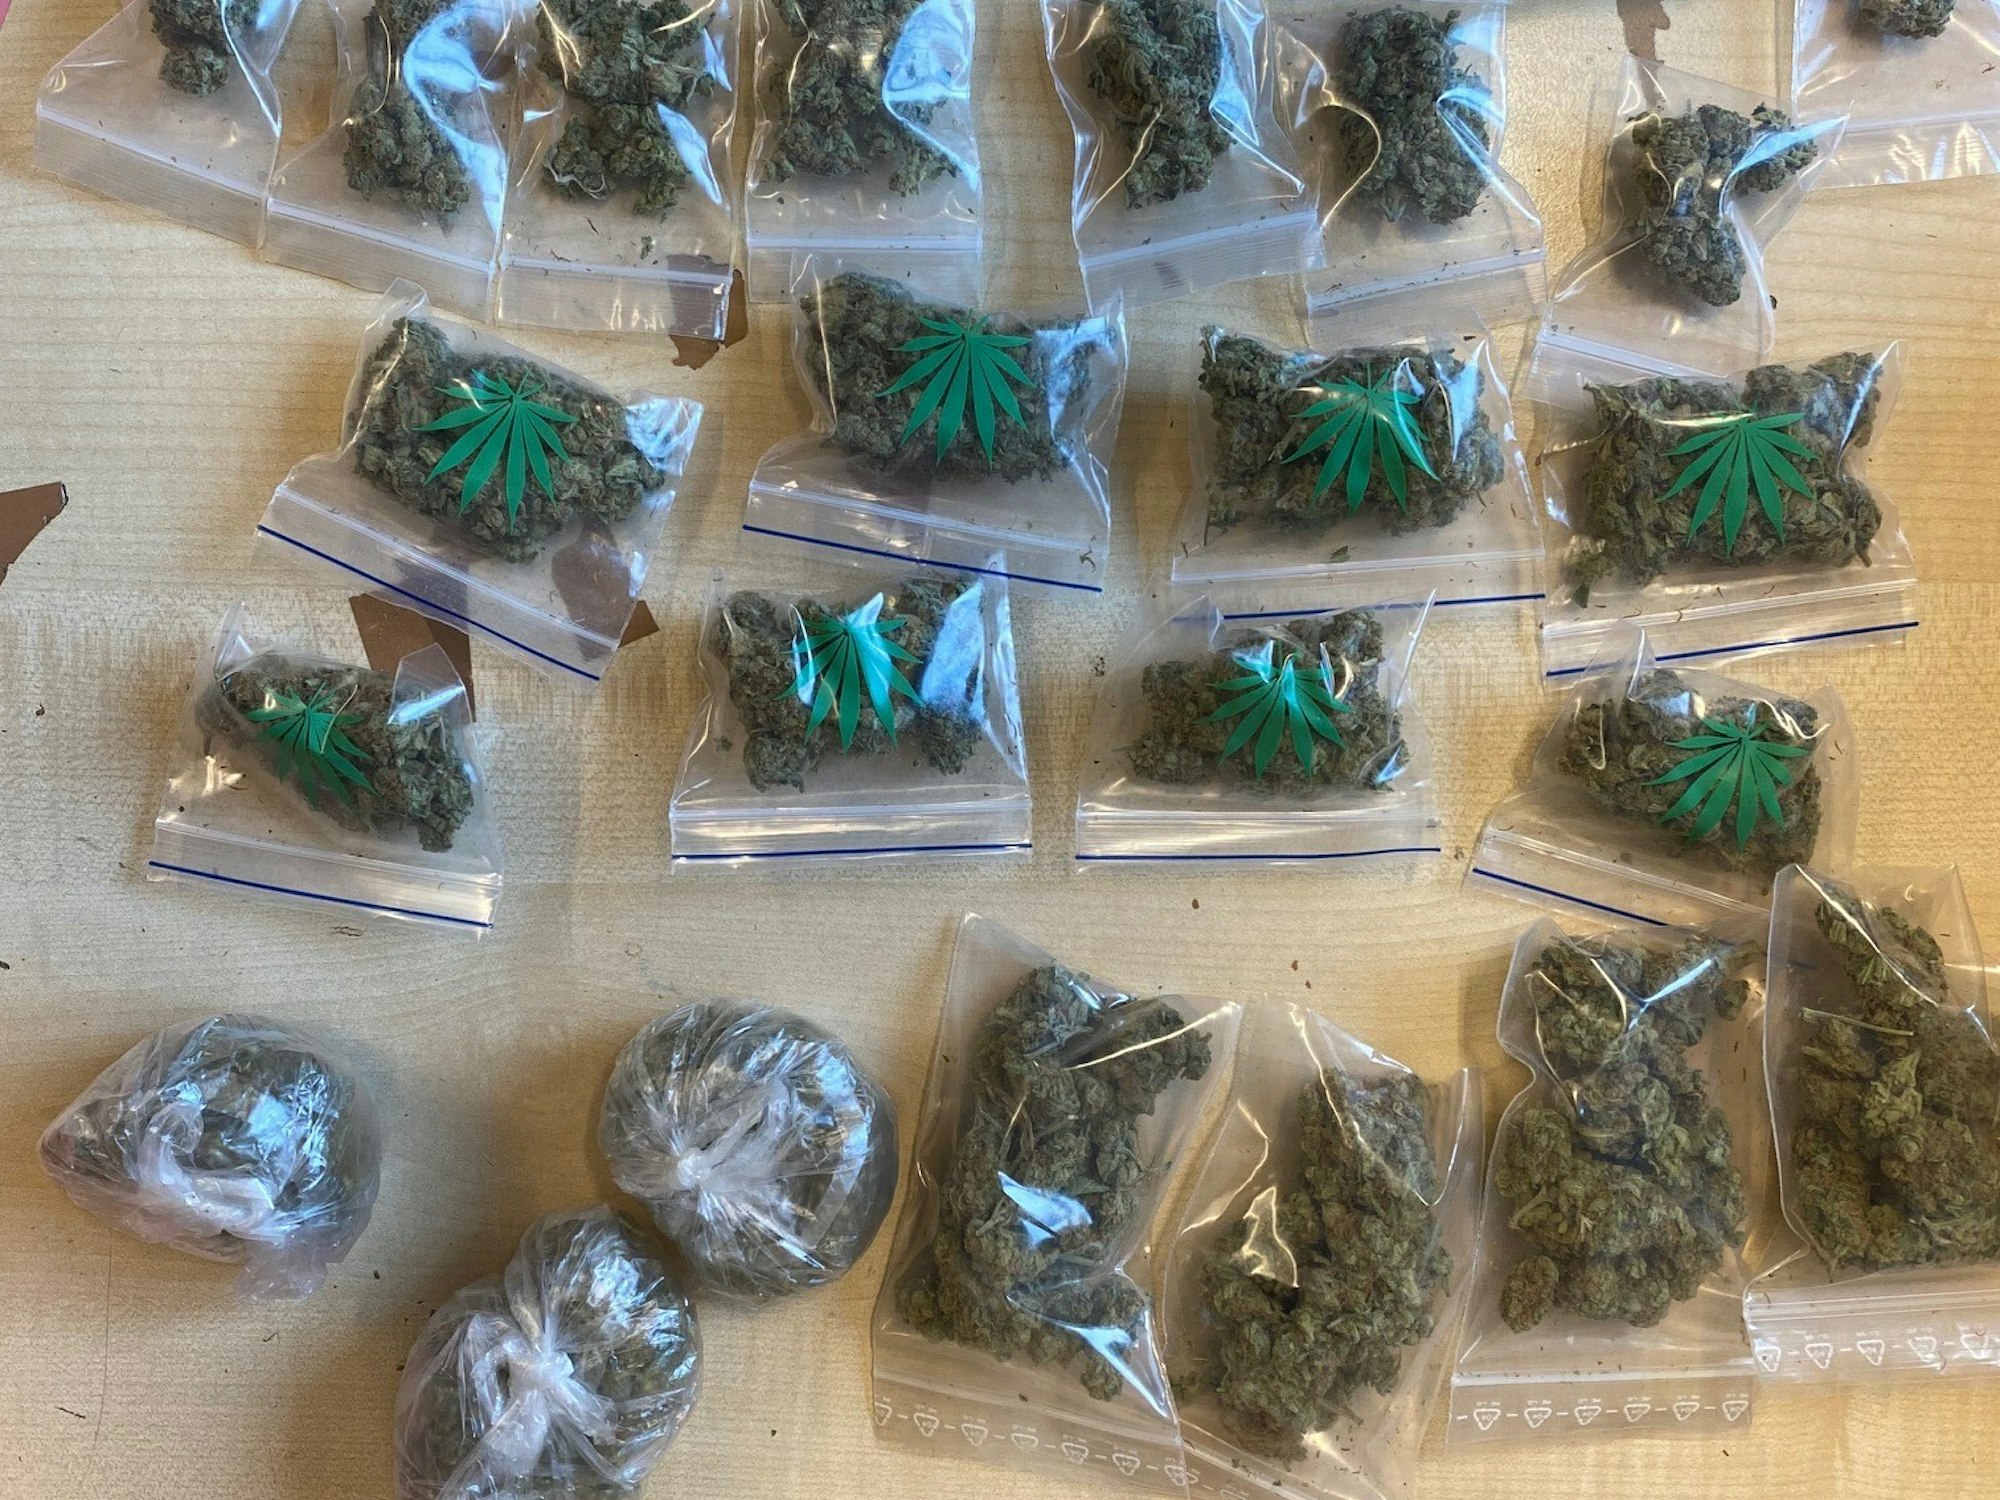 Viele Tütchen mit Cannabis auf einem Tisch